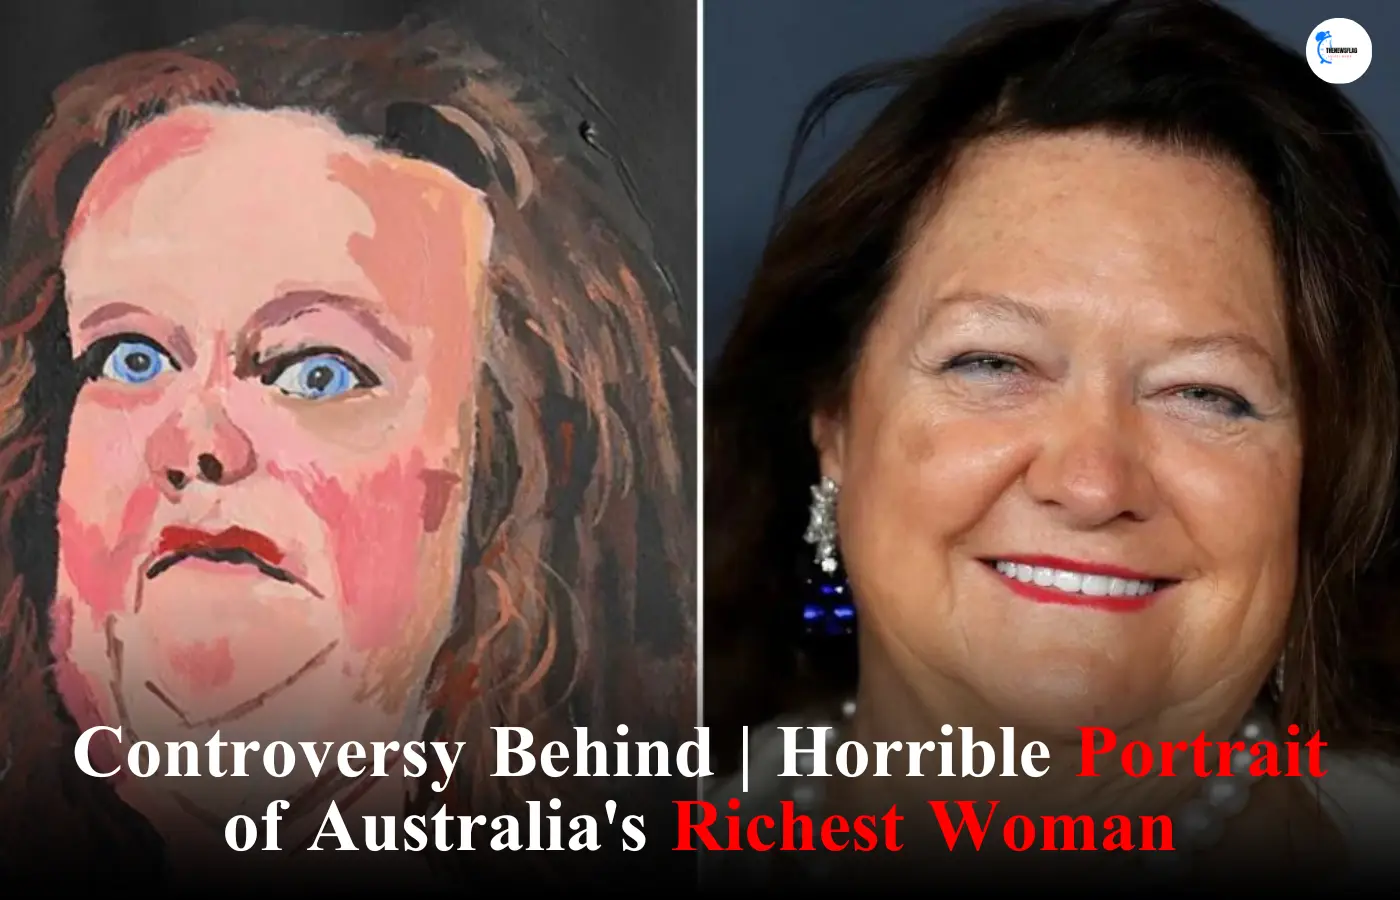 Horrible Portrait of Australia's Richest Woman